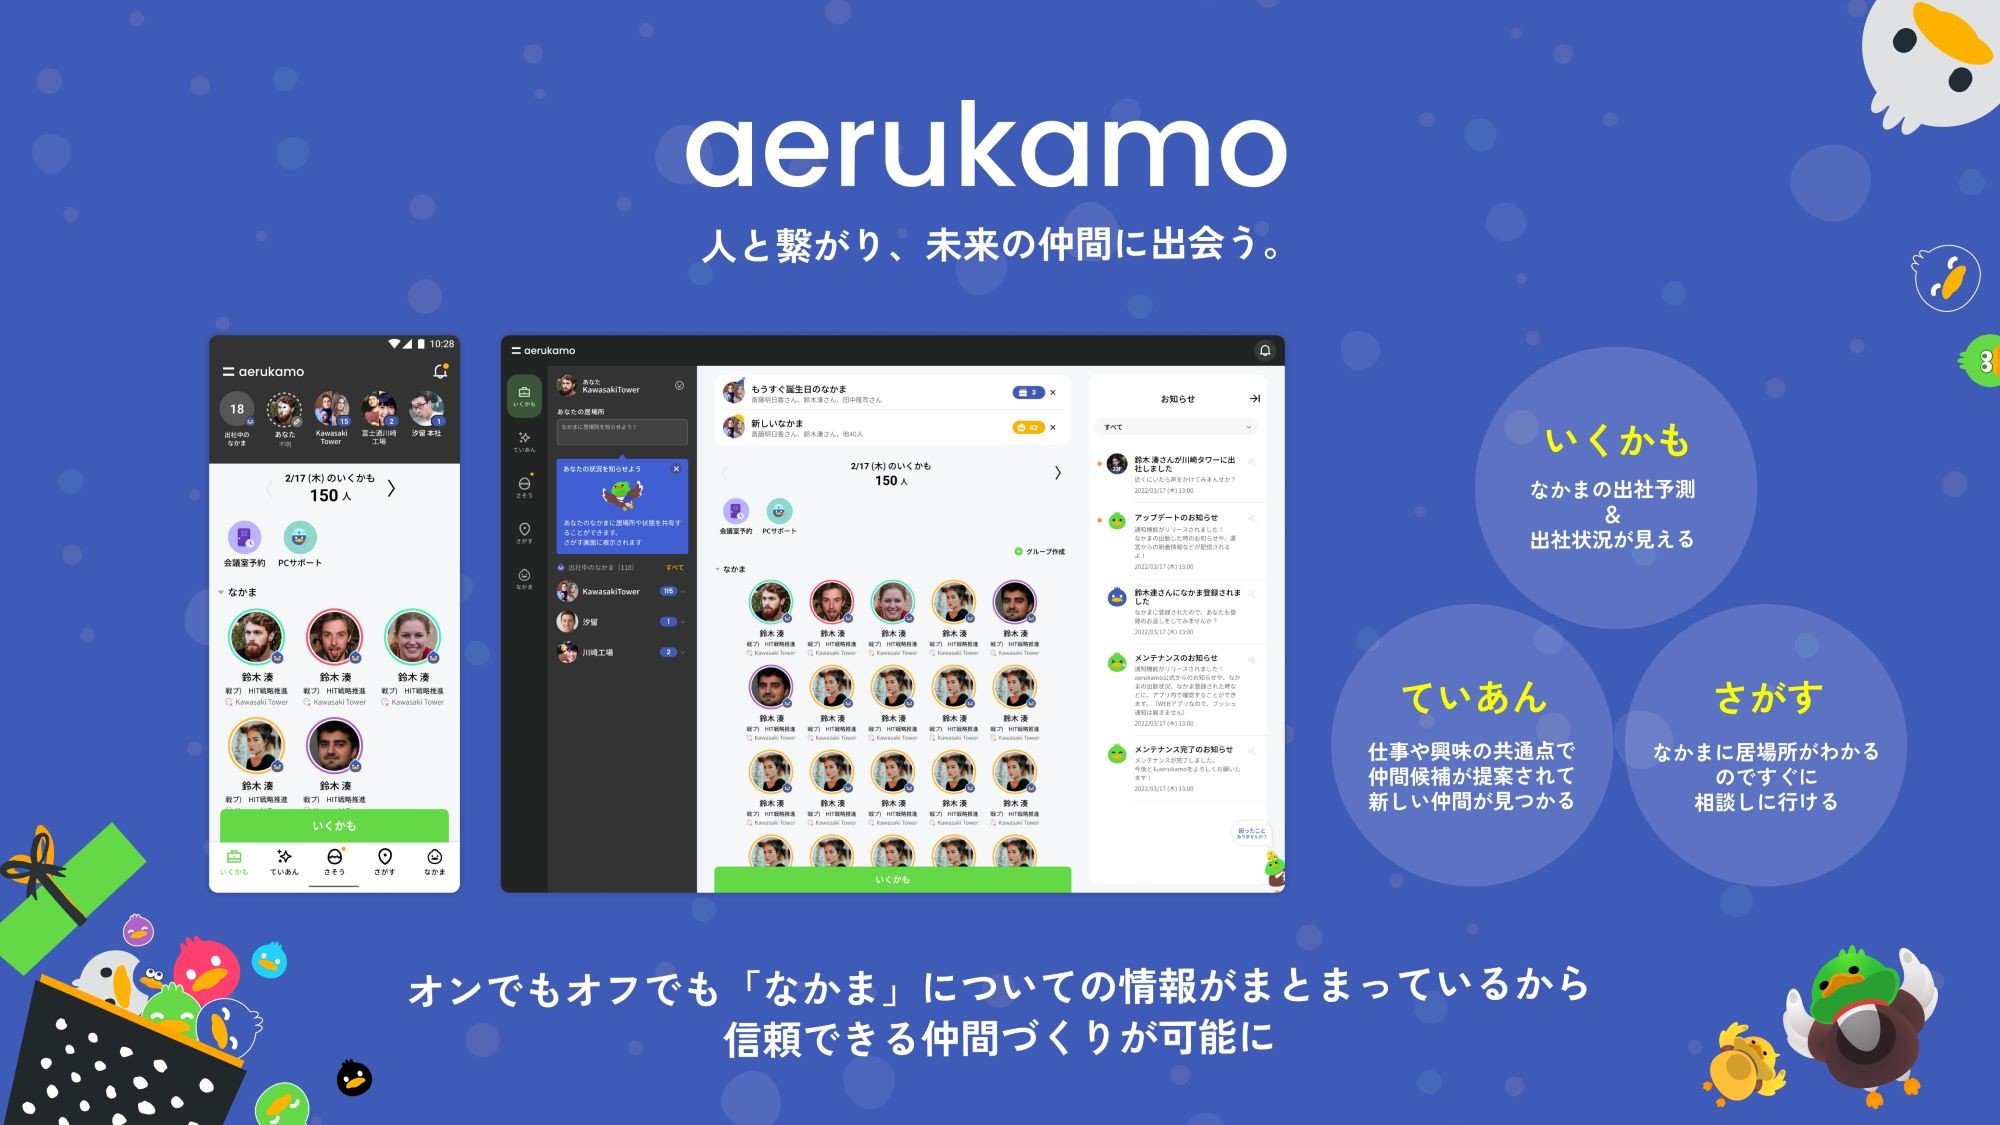 コロナ禍で生まれた富士通の社内サービス「aerukamo」。木内さんは若手社員の寂しい思いに応え、自ら手を挙げてプロジェクトの立ち上げから参加した。